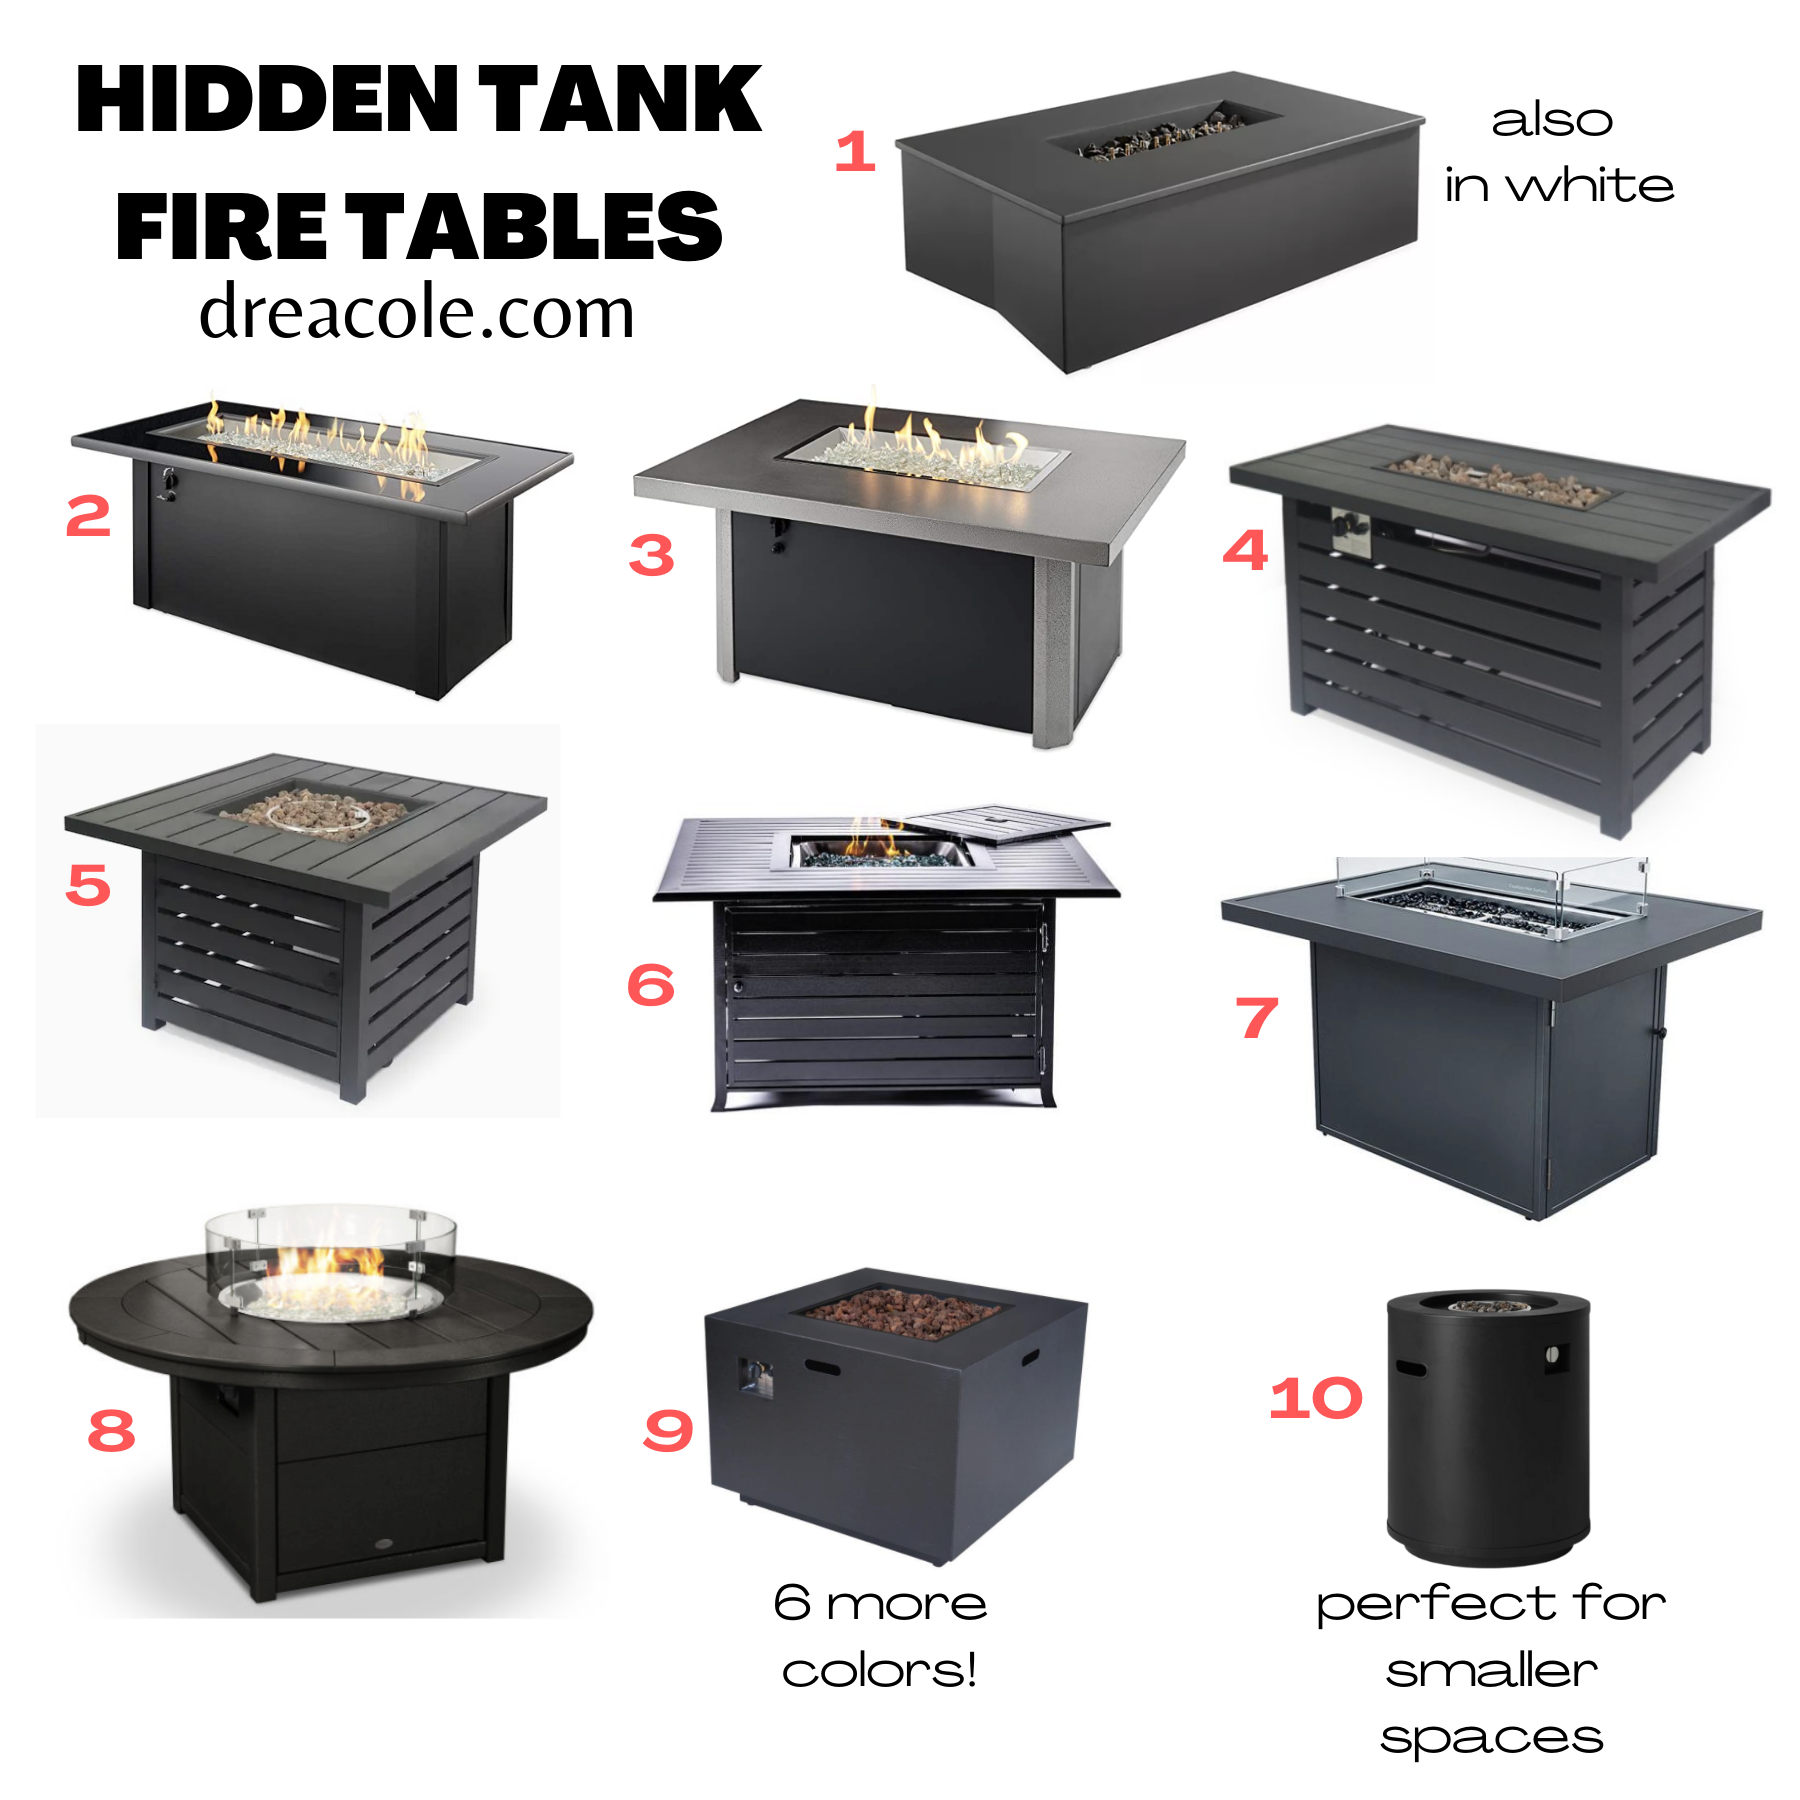 Hidden Tank Fire Table Roundup